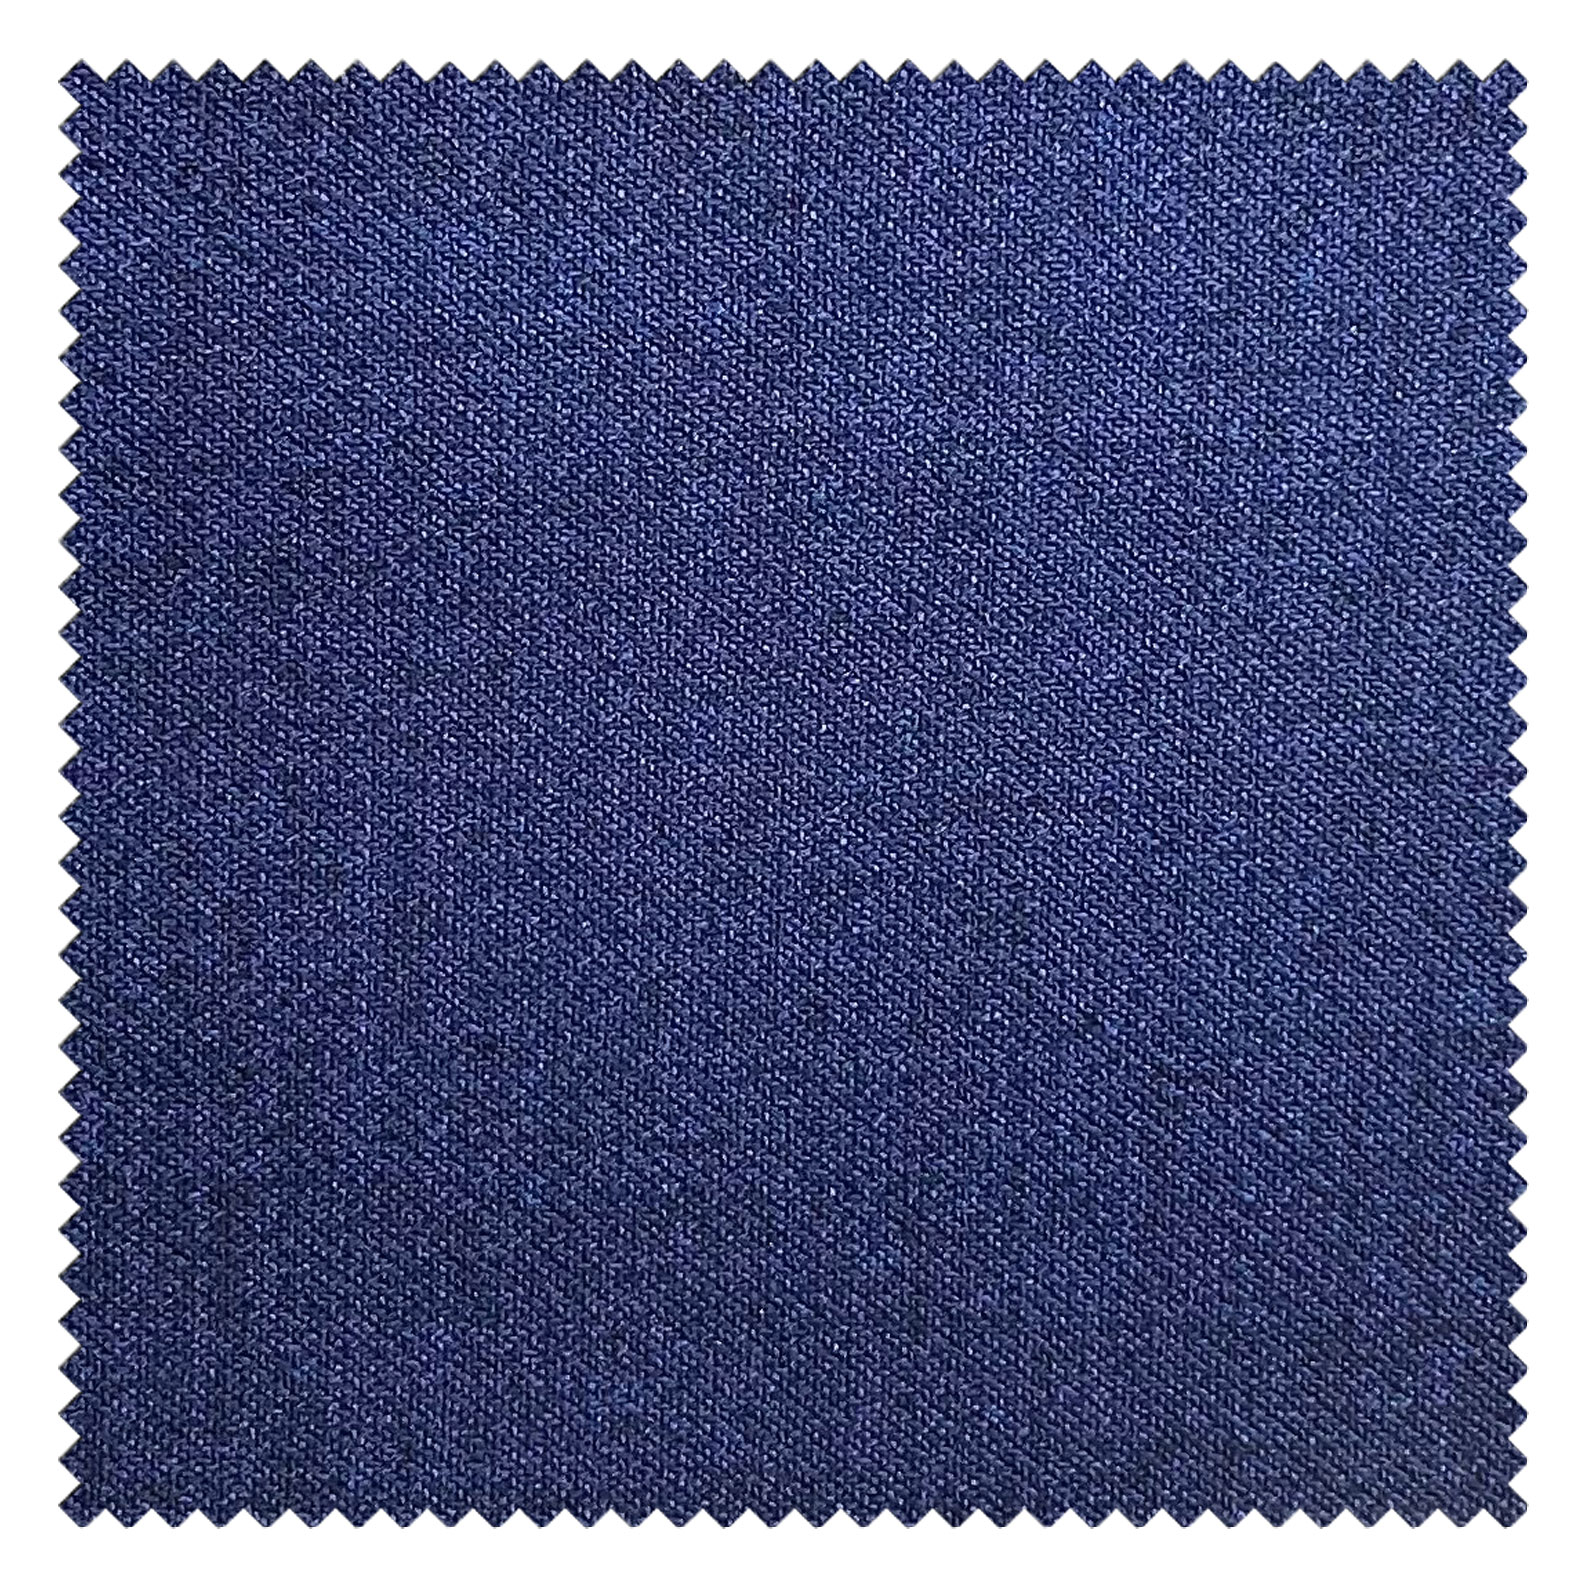 KINGMAN Silk Wool Fabric HAMPSTEAD ZANOTTI ROYALBLUE ผ้าตัดชุดสูท สีฟ้าสด กางเกง ผู้ชาย สีกากี ผ้าตัดเสื้อ ยูนิฟอร์ม ผ้าวูล ผ้าคุณภาพดี กว้าง 60 นิ้ว ยาว 1 เมตร